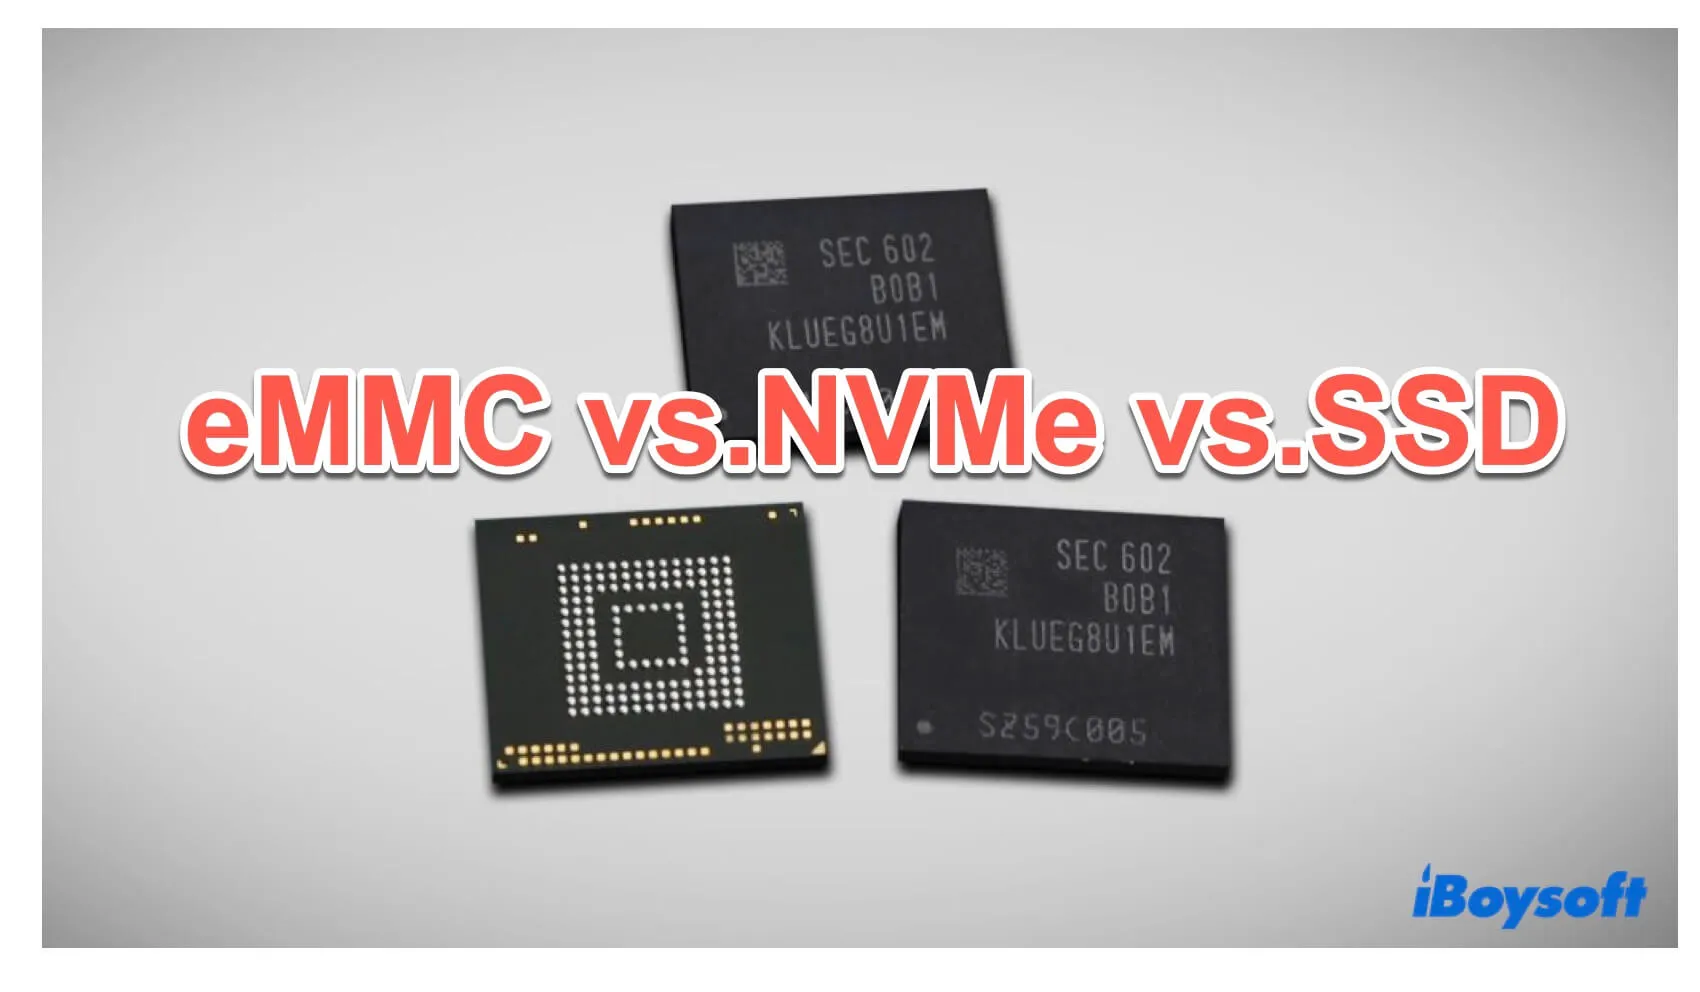 Comparaison eMMC vs NVMe et eMMC vs SSD